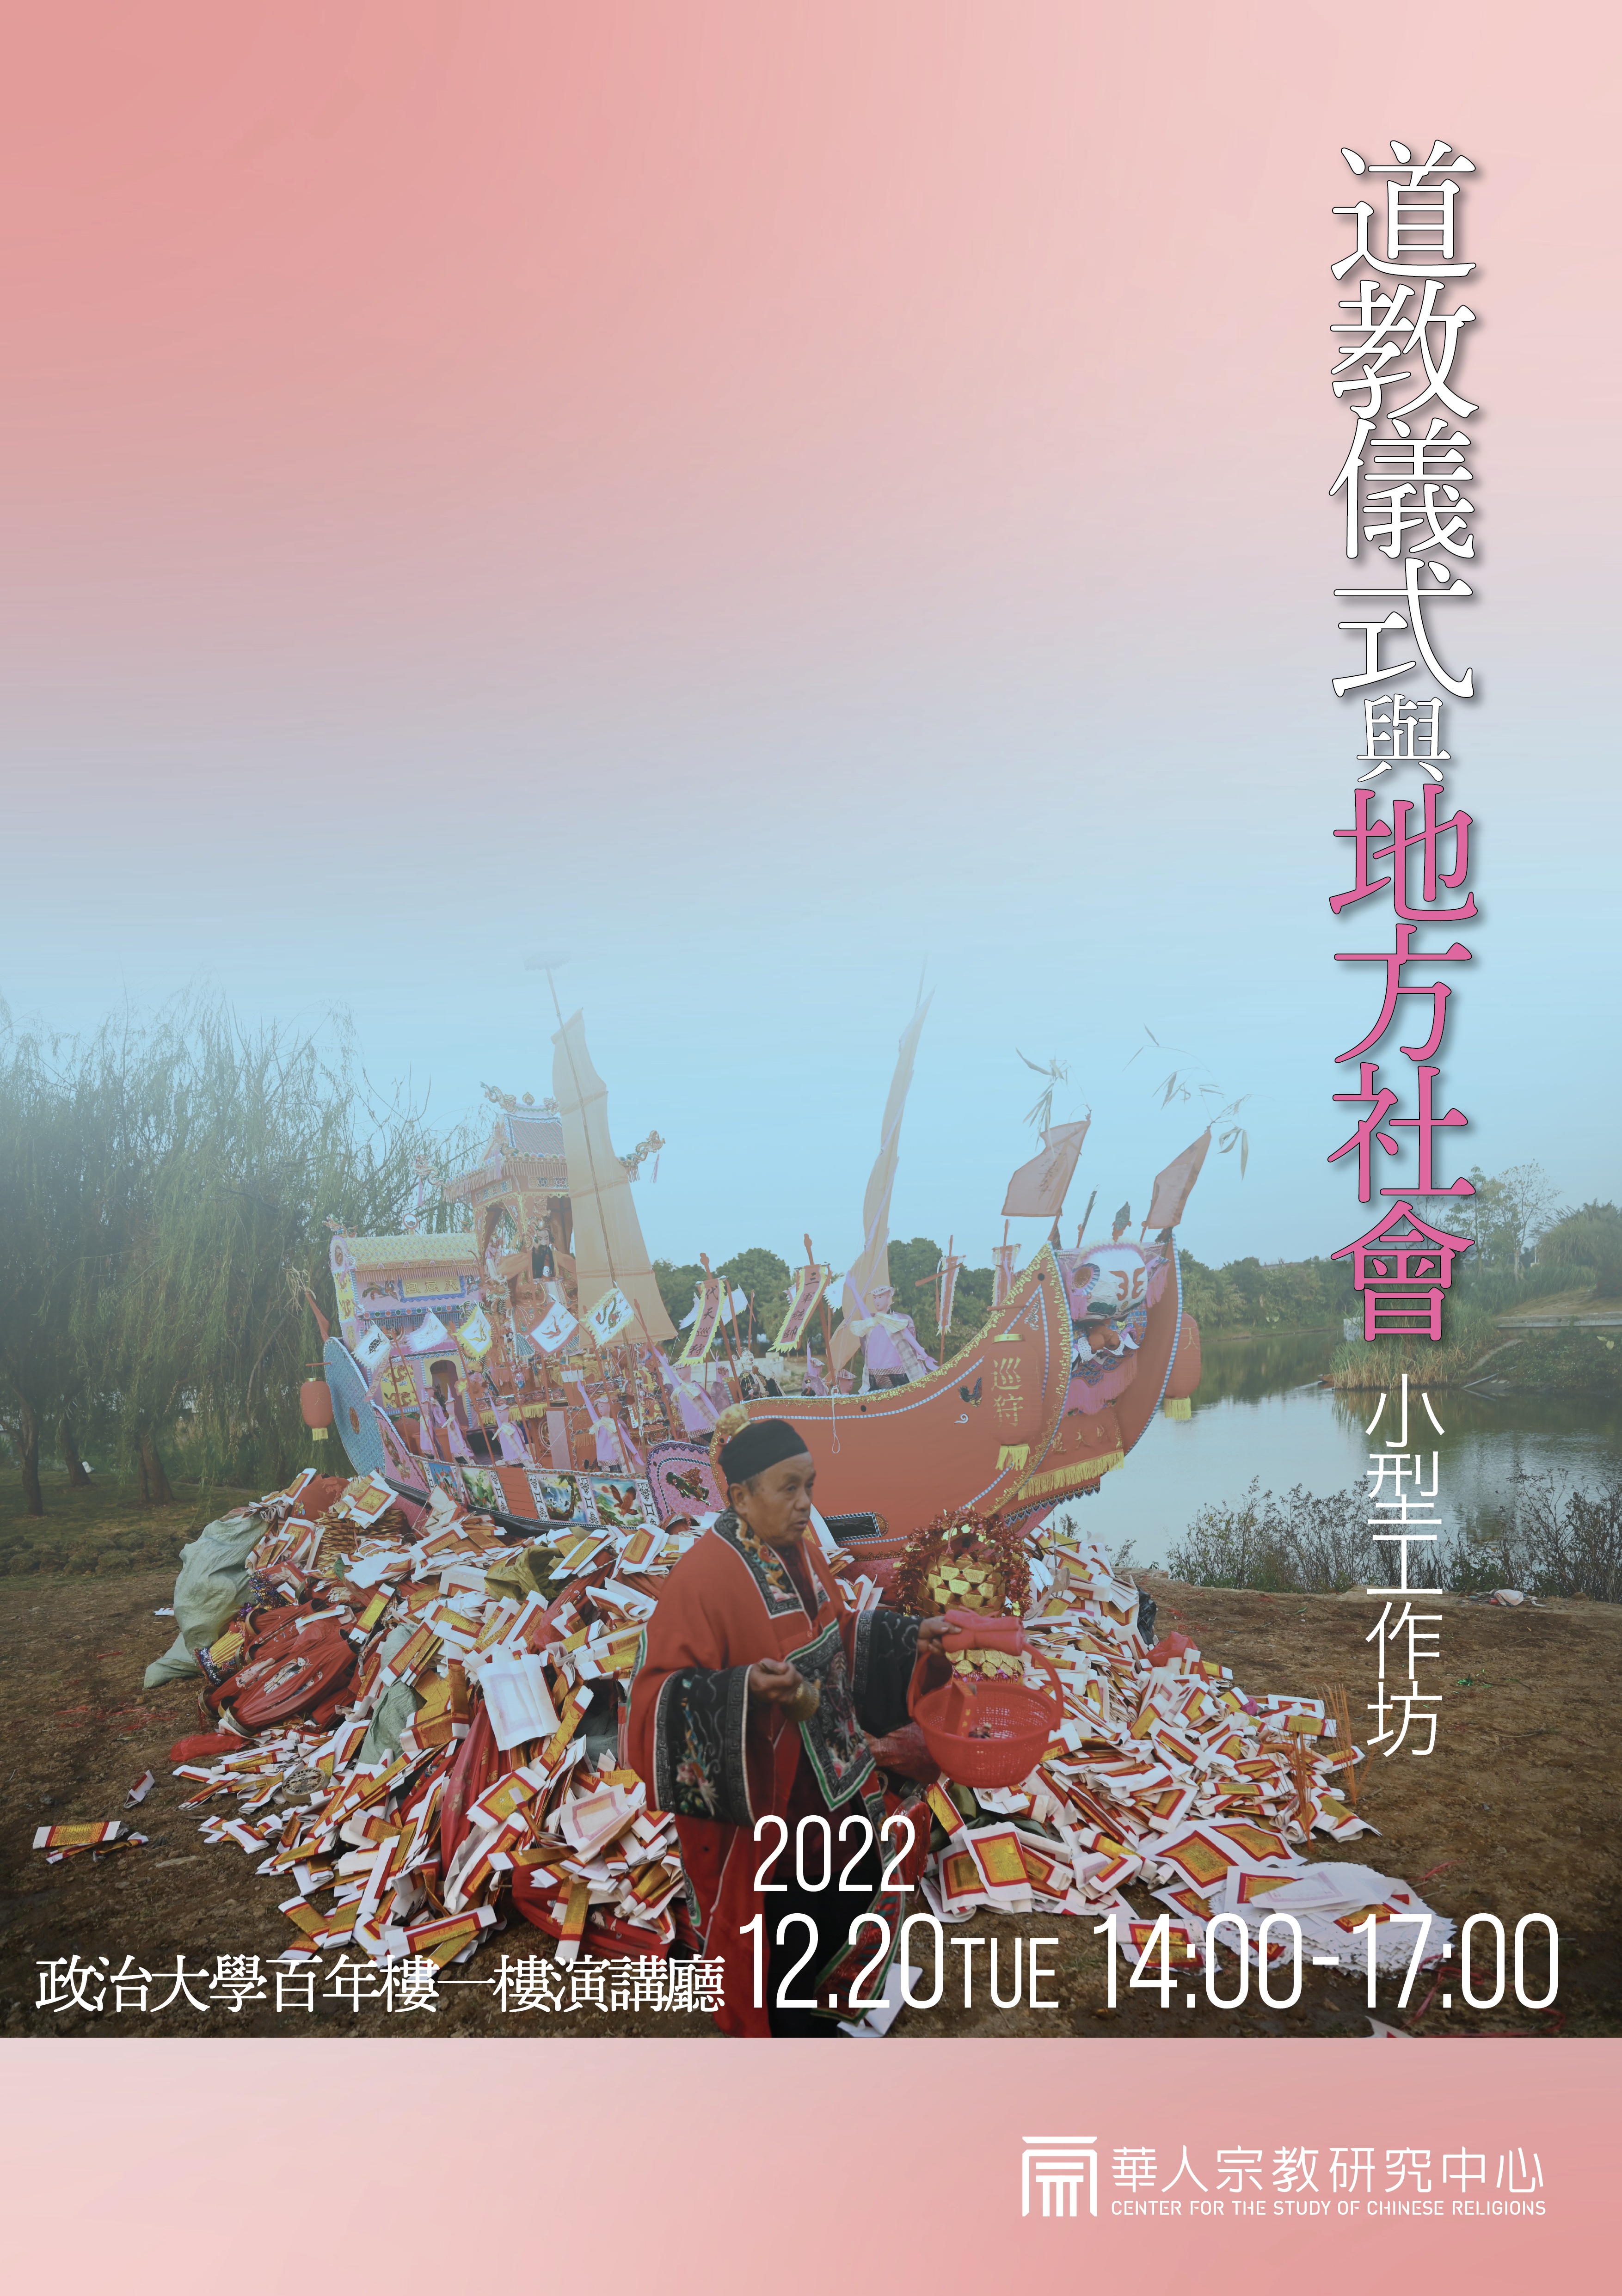 2022.12.20(二)政治大學華人宗教研究中心—「道教儀式與地方社會」小型工作坊